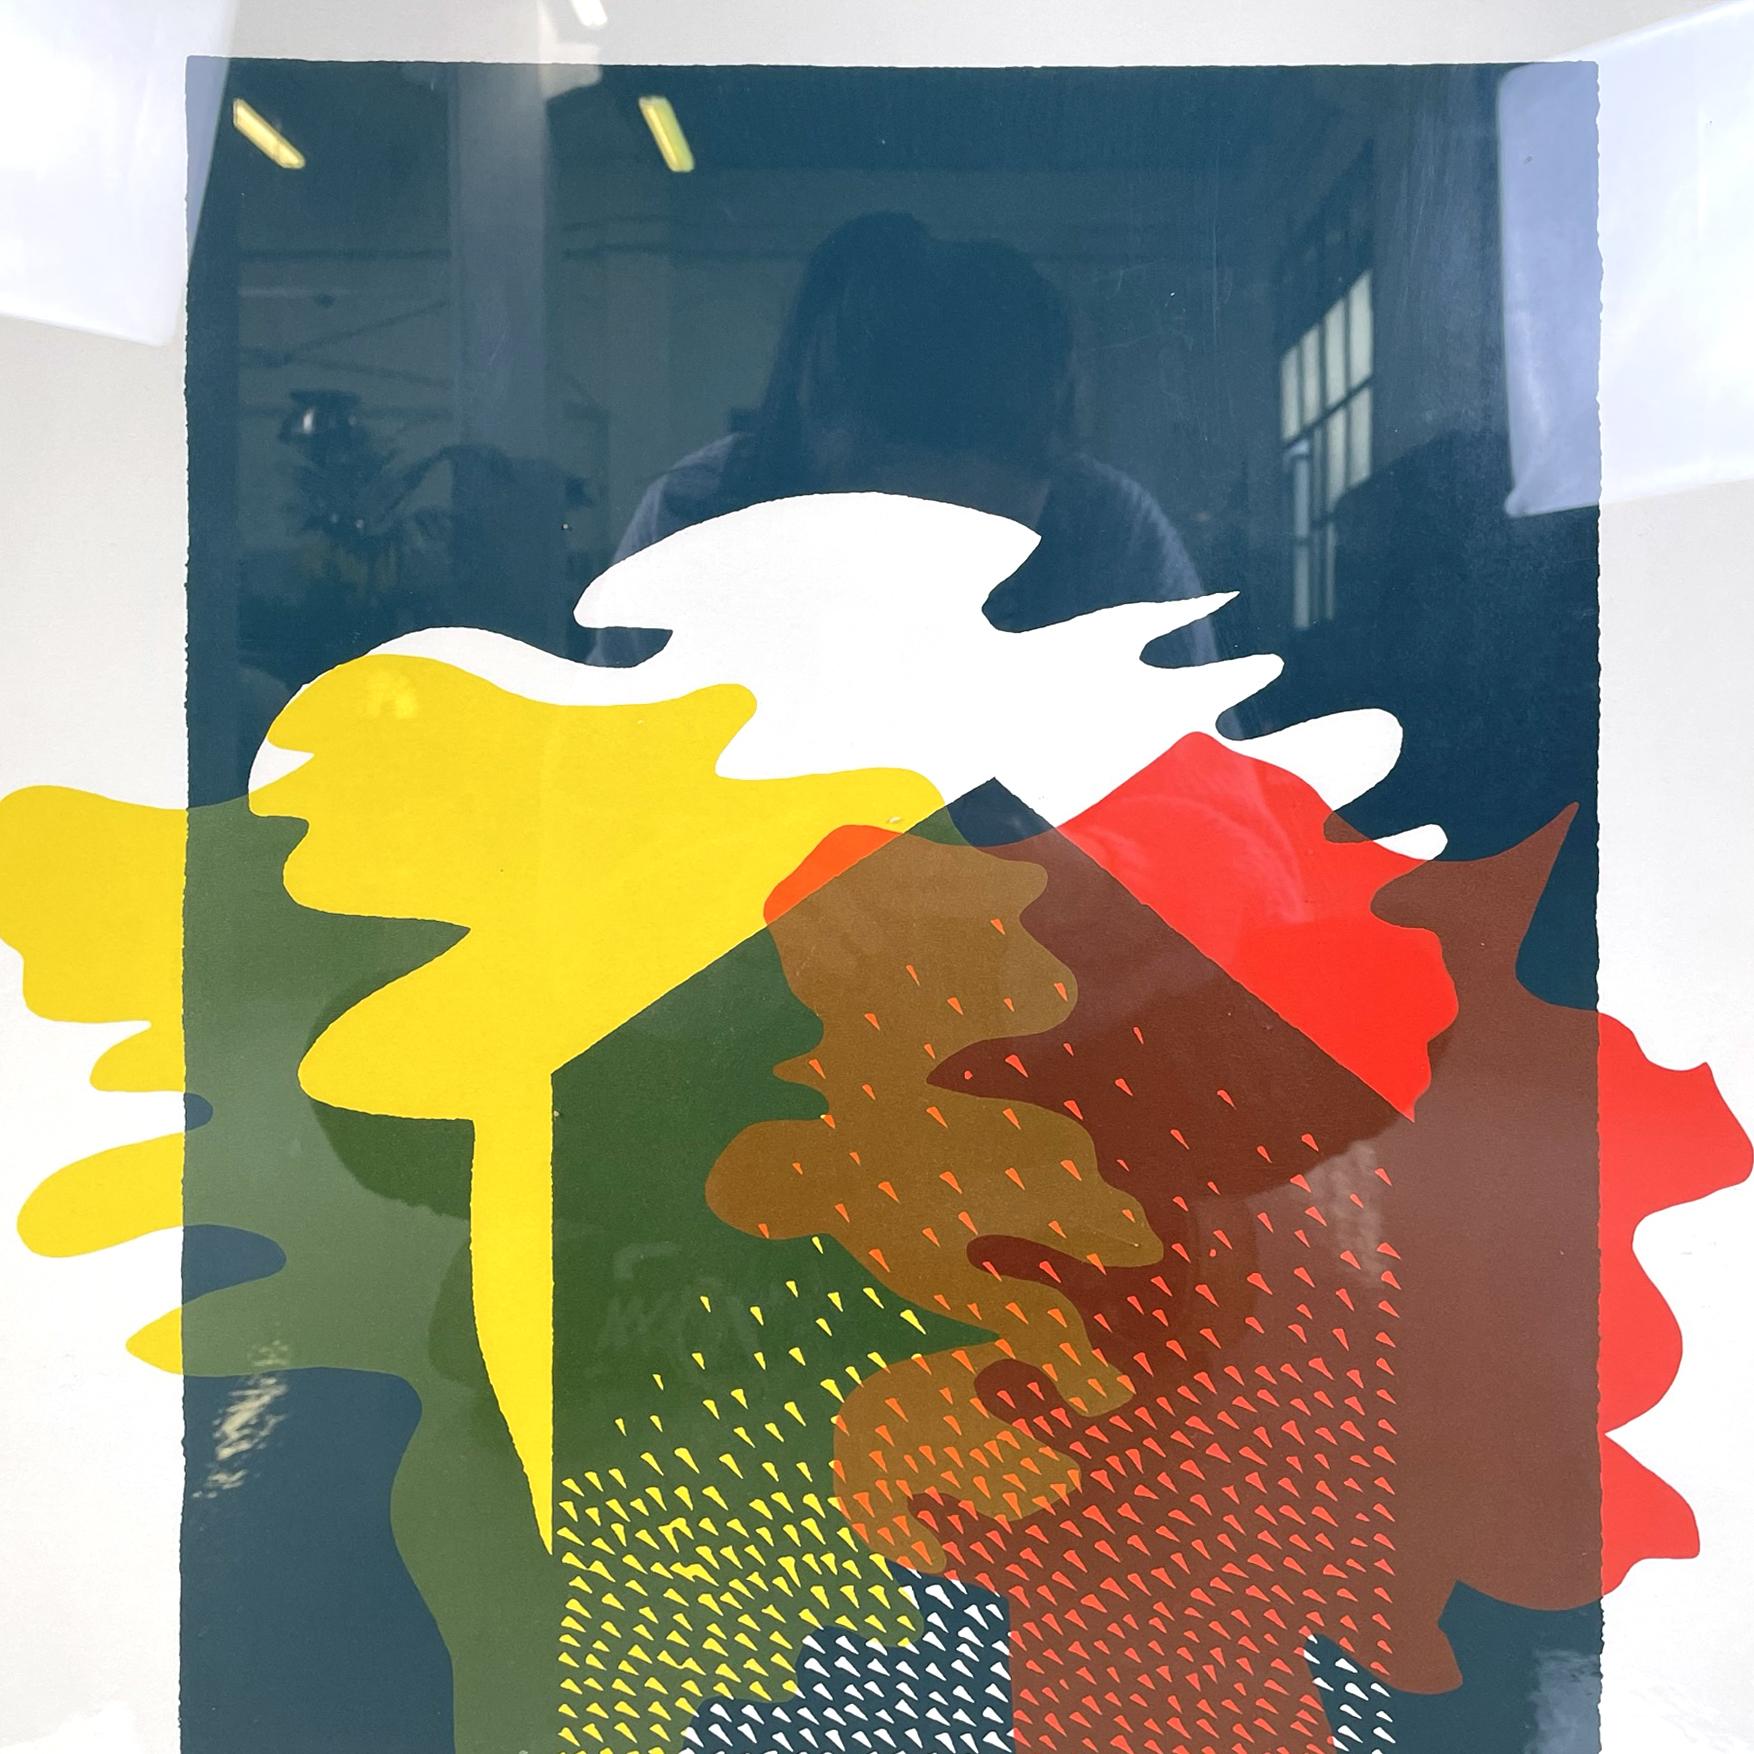 Italienisch modern Rechteckiger Siebdruck eines Hauses im Rahmen, 1980
Rechteckiger Siebdruck auf weißem Papier, der eine Silhouette eines Hauses darstellt. Die vorhandenen Farben sind Mitternachtsblau, Rot und Gelb. In weiß lackiertem